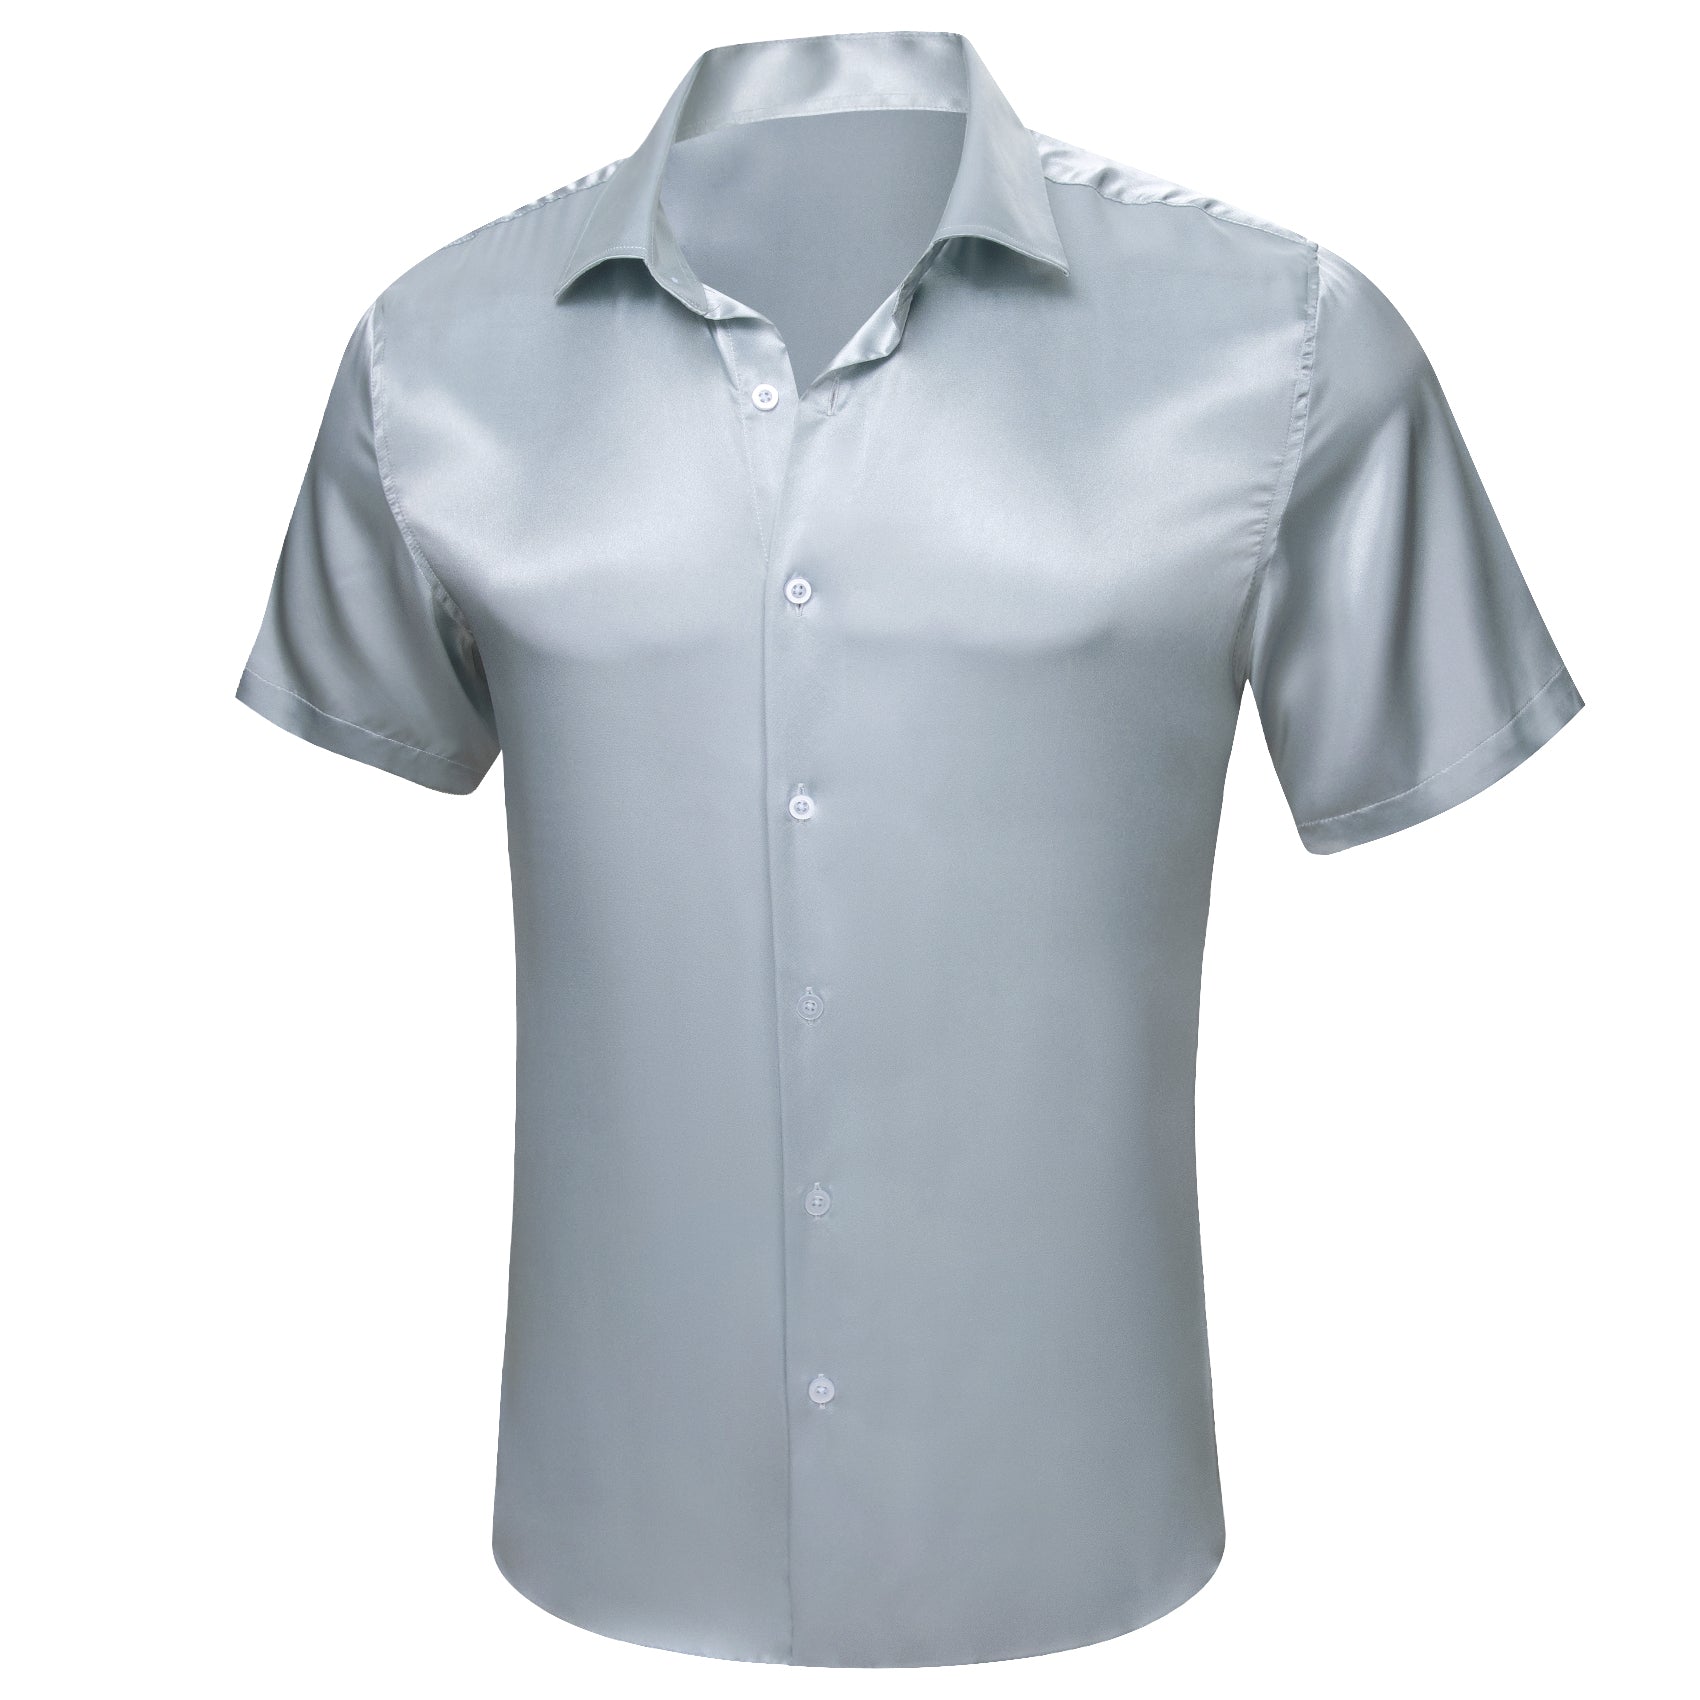 lIGHT GREY SHIRTS mens button down shirts